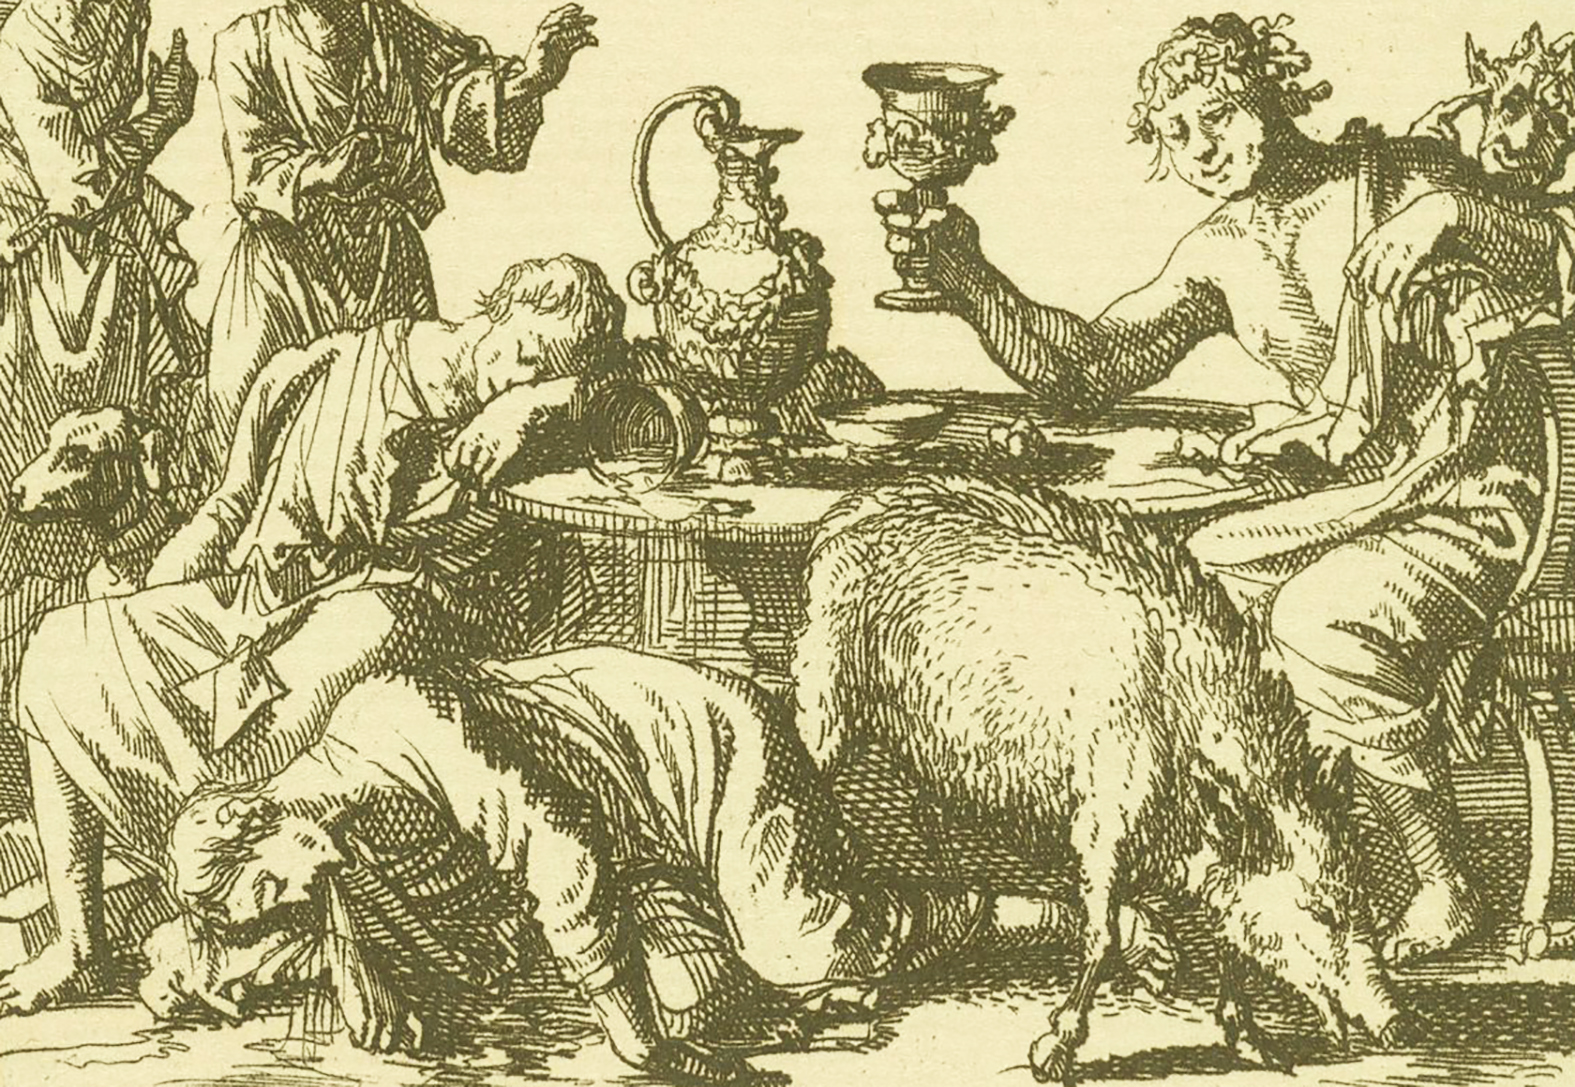 Jan Luyken, Dronkenschap en Gulzigheid leiden naar de hel, 1699 (detail)